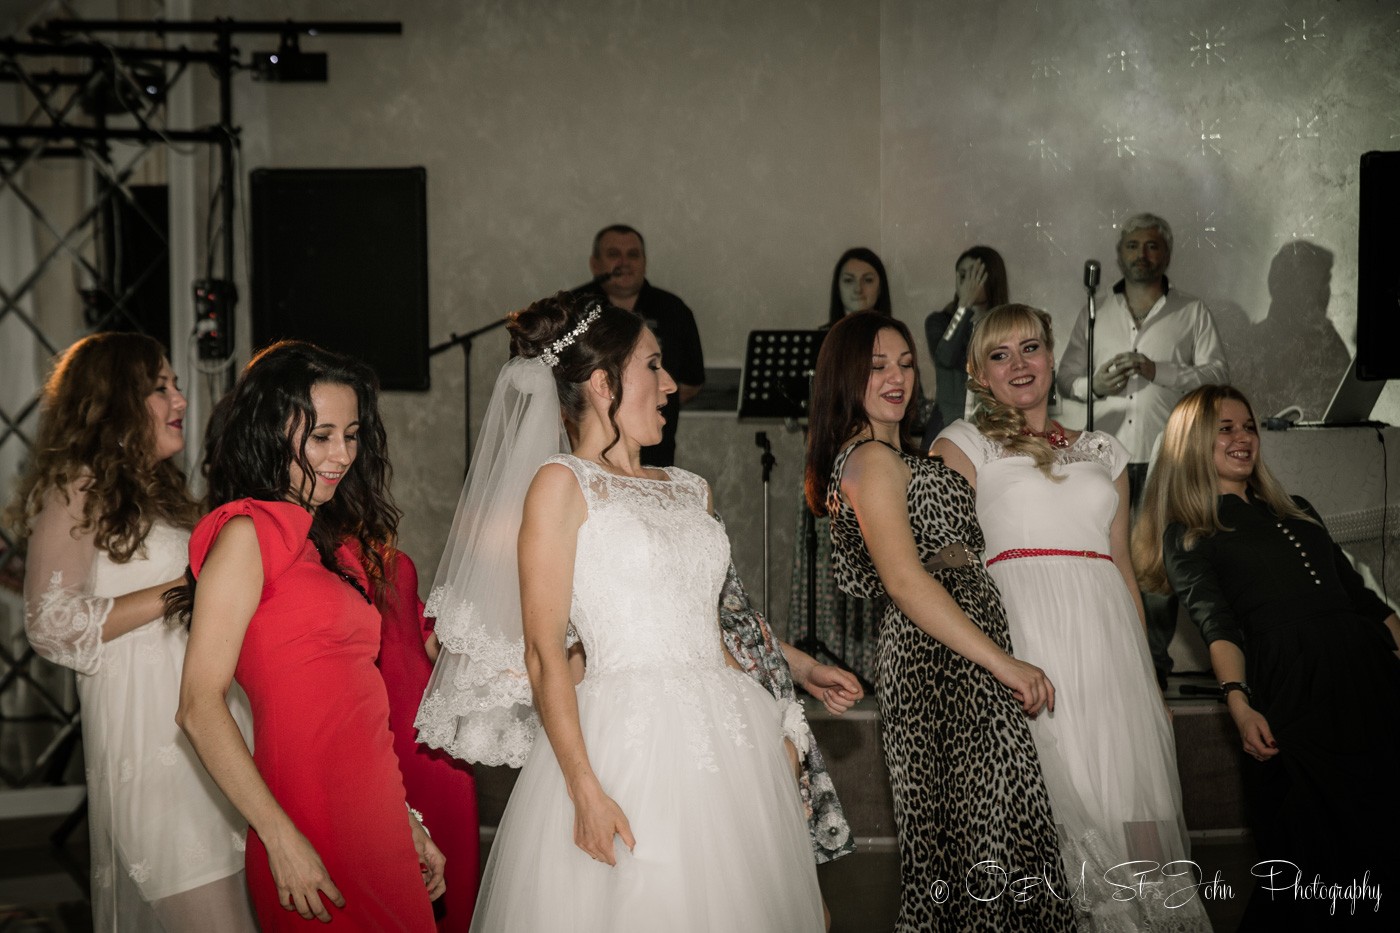 Ladies dancing at cousin's wedding in Ukraine